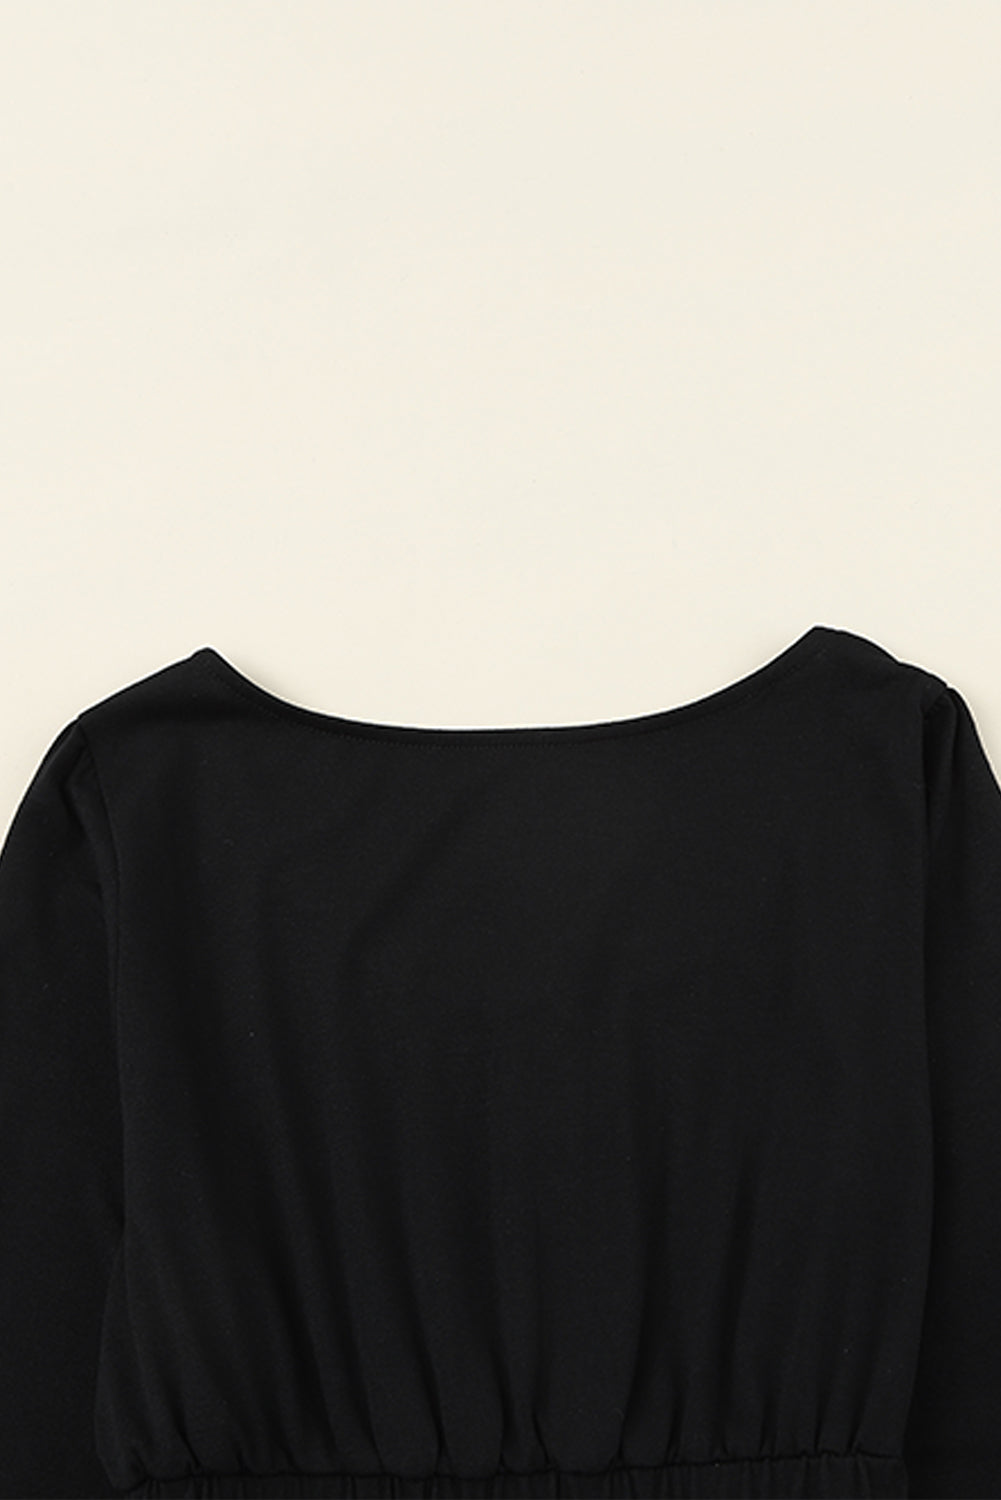 Schwarzes, geknöpftes, langärmliges Kleid mit hoher Taille